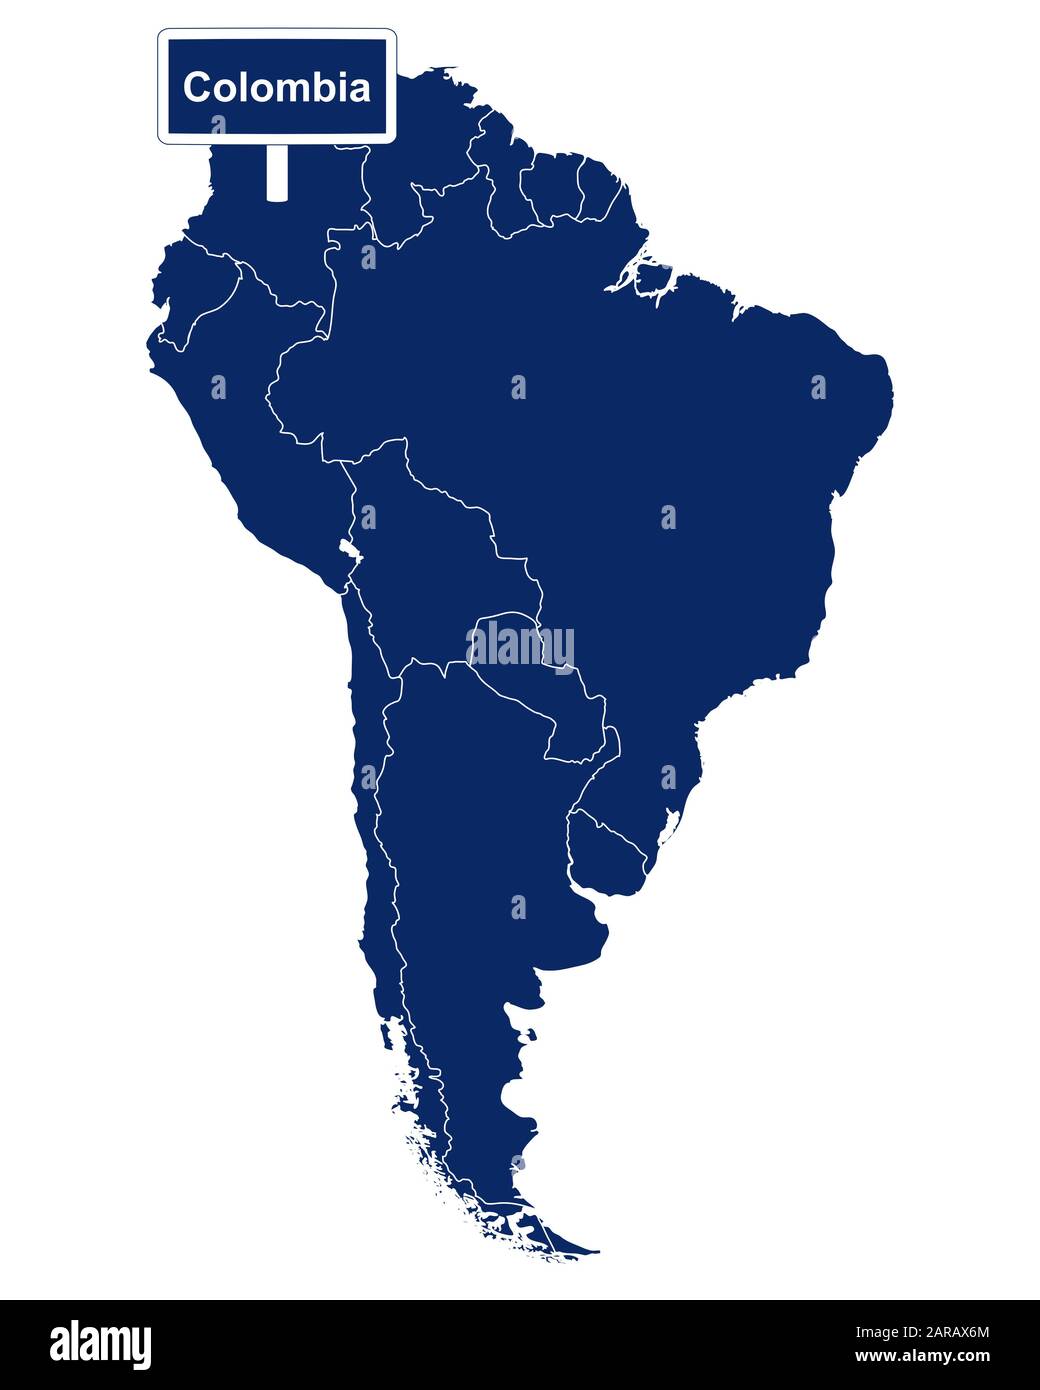 Colombie avec carte de l'Amérique du Sud et panneau de route Banque D'Images